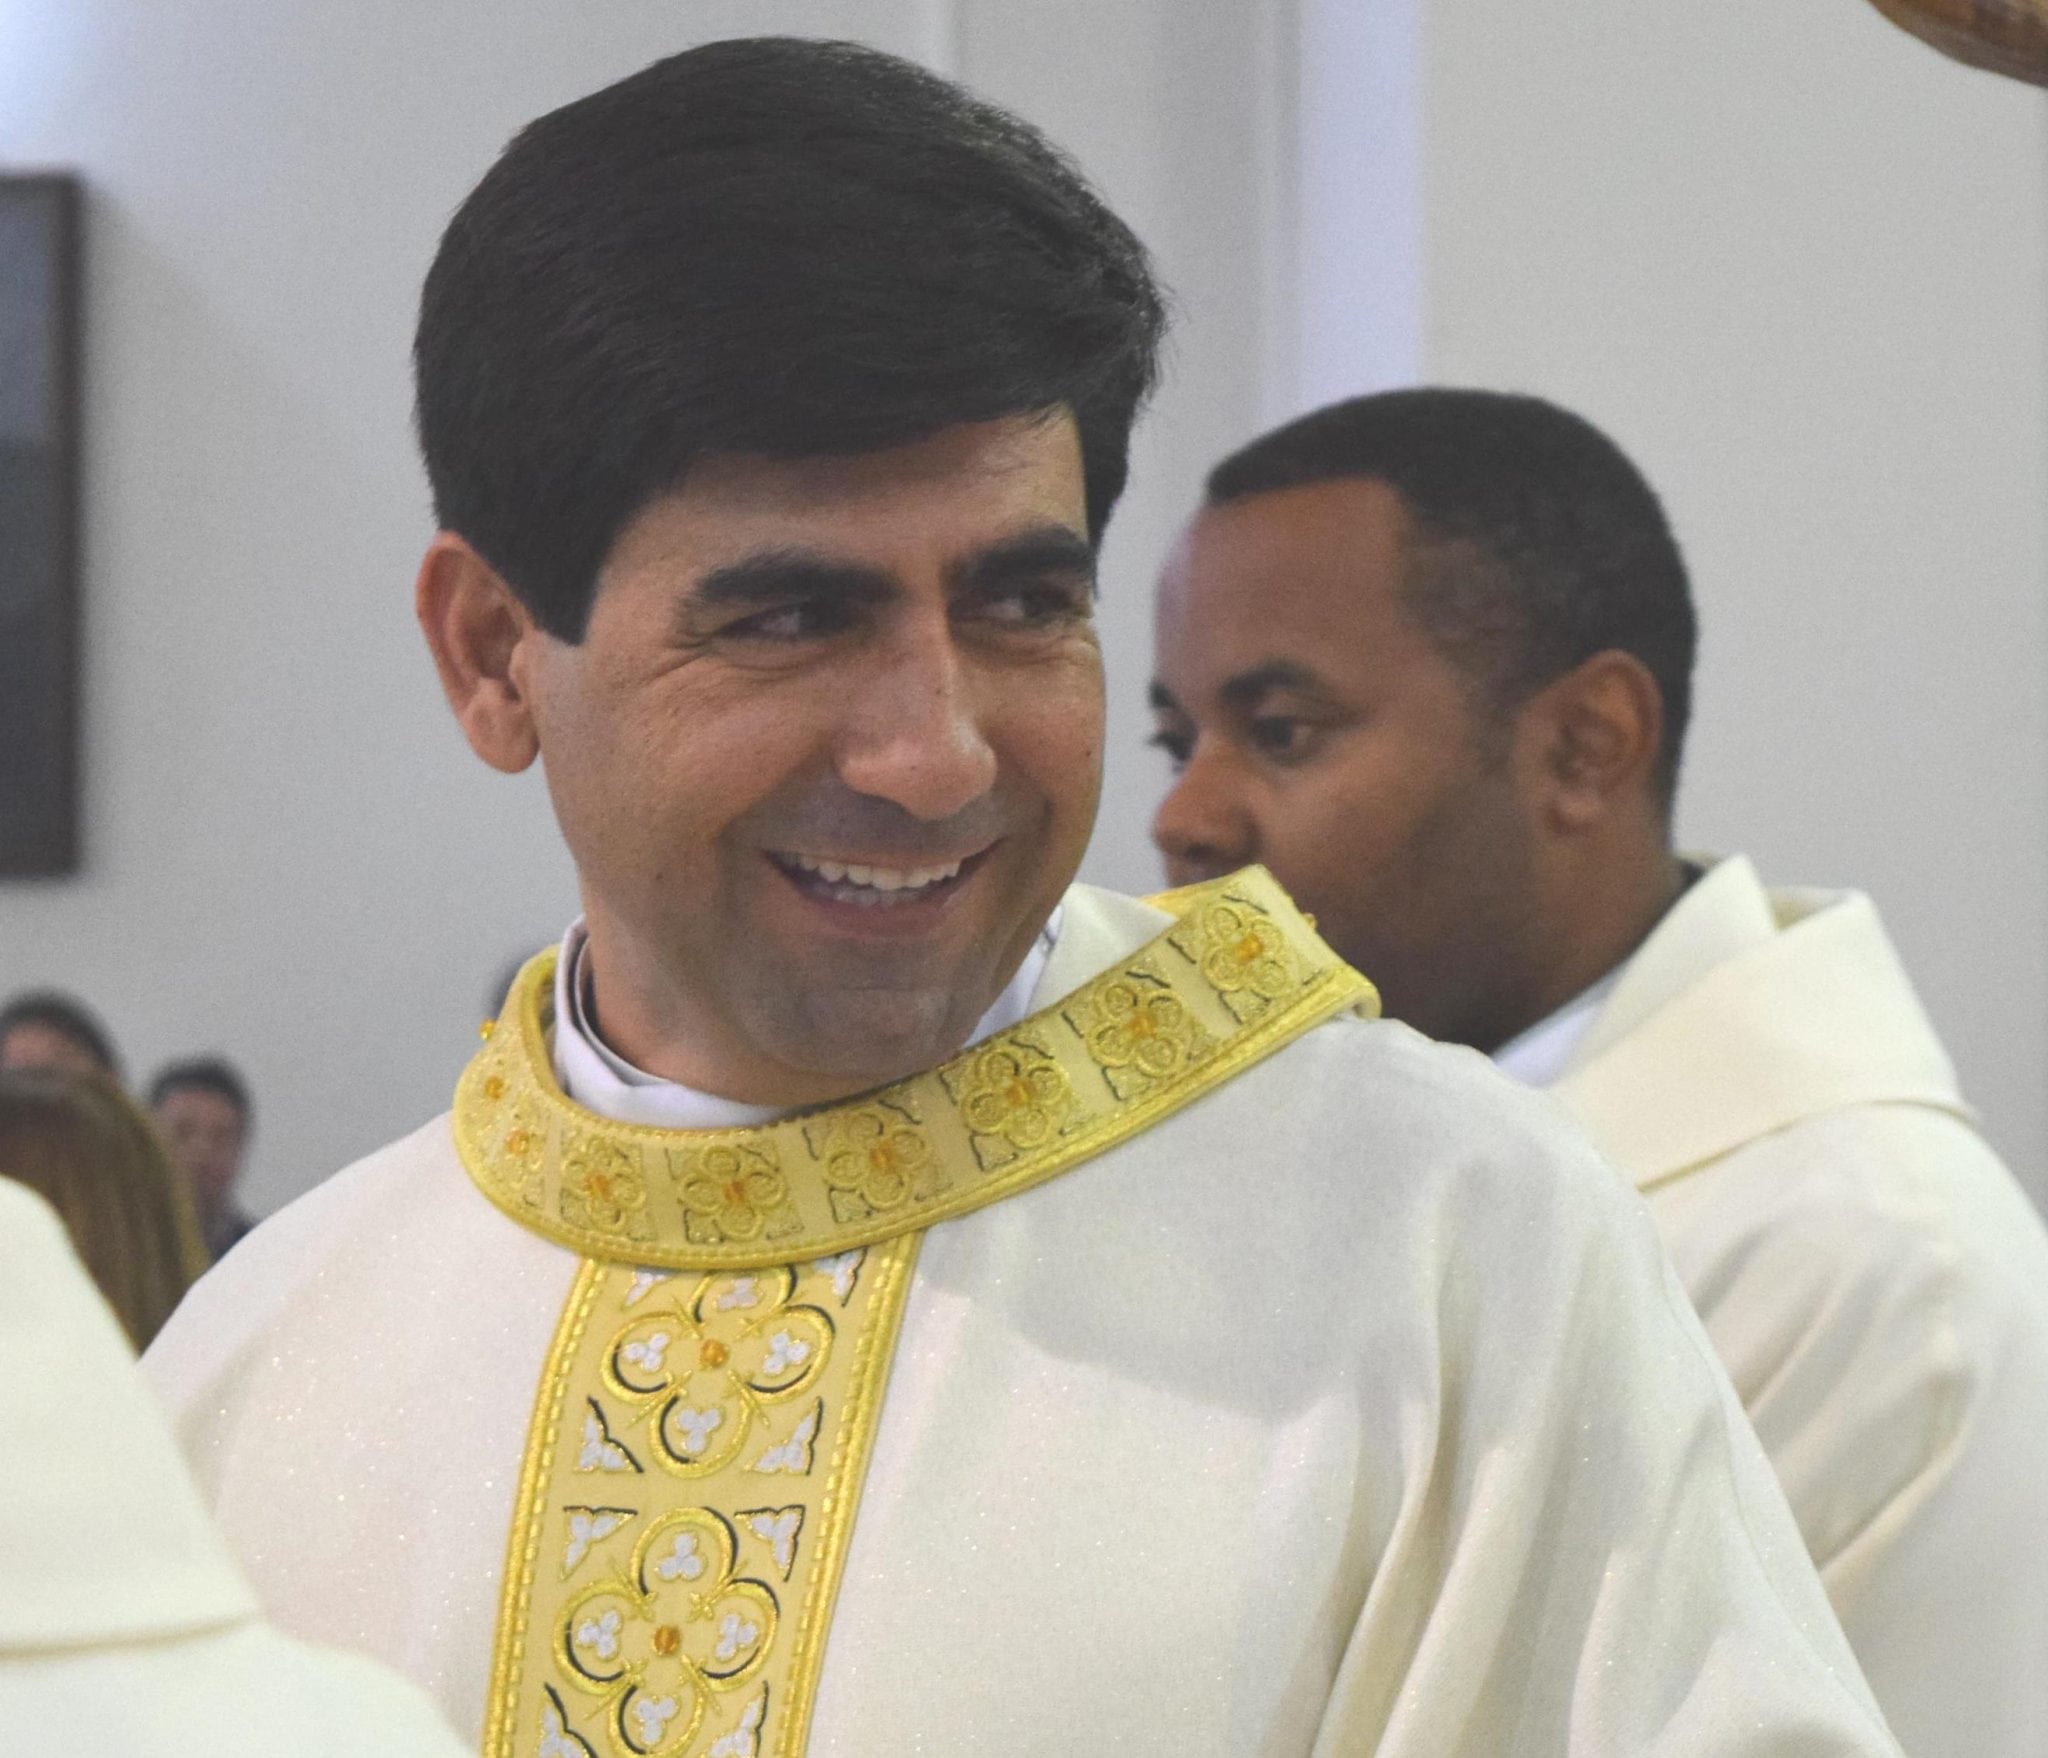 Pe. José Silvano Torquato - Arquidiocese de Florianópolis/SC